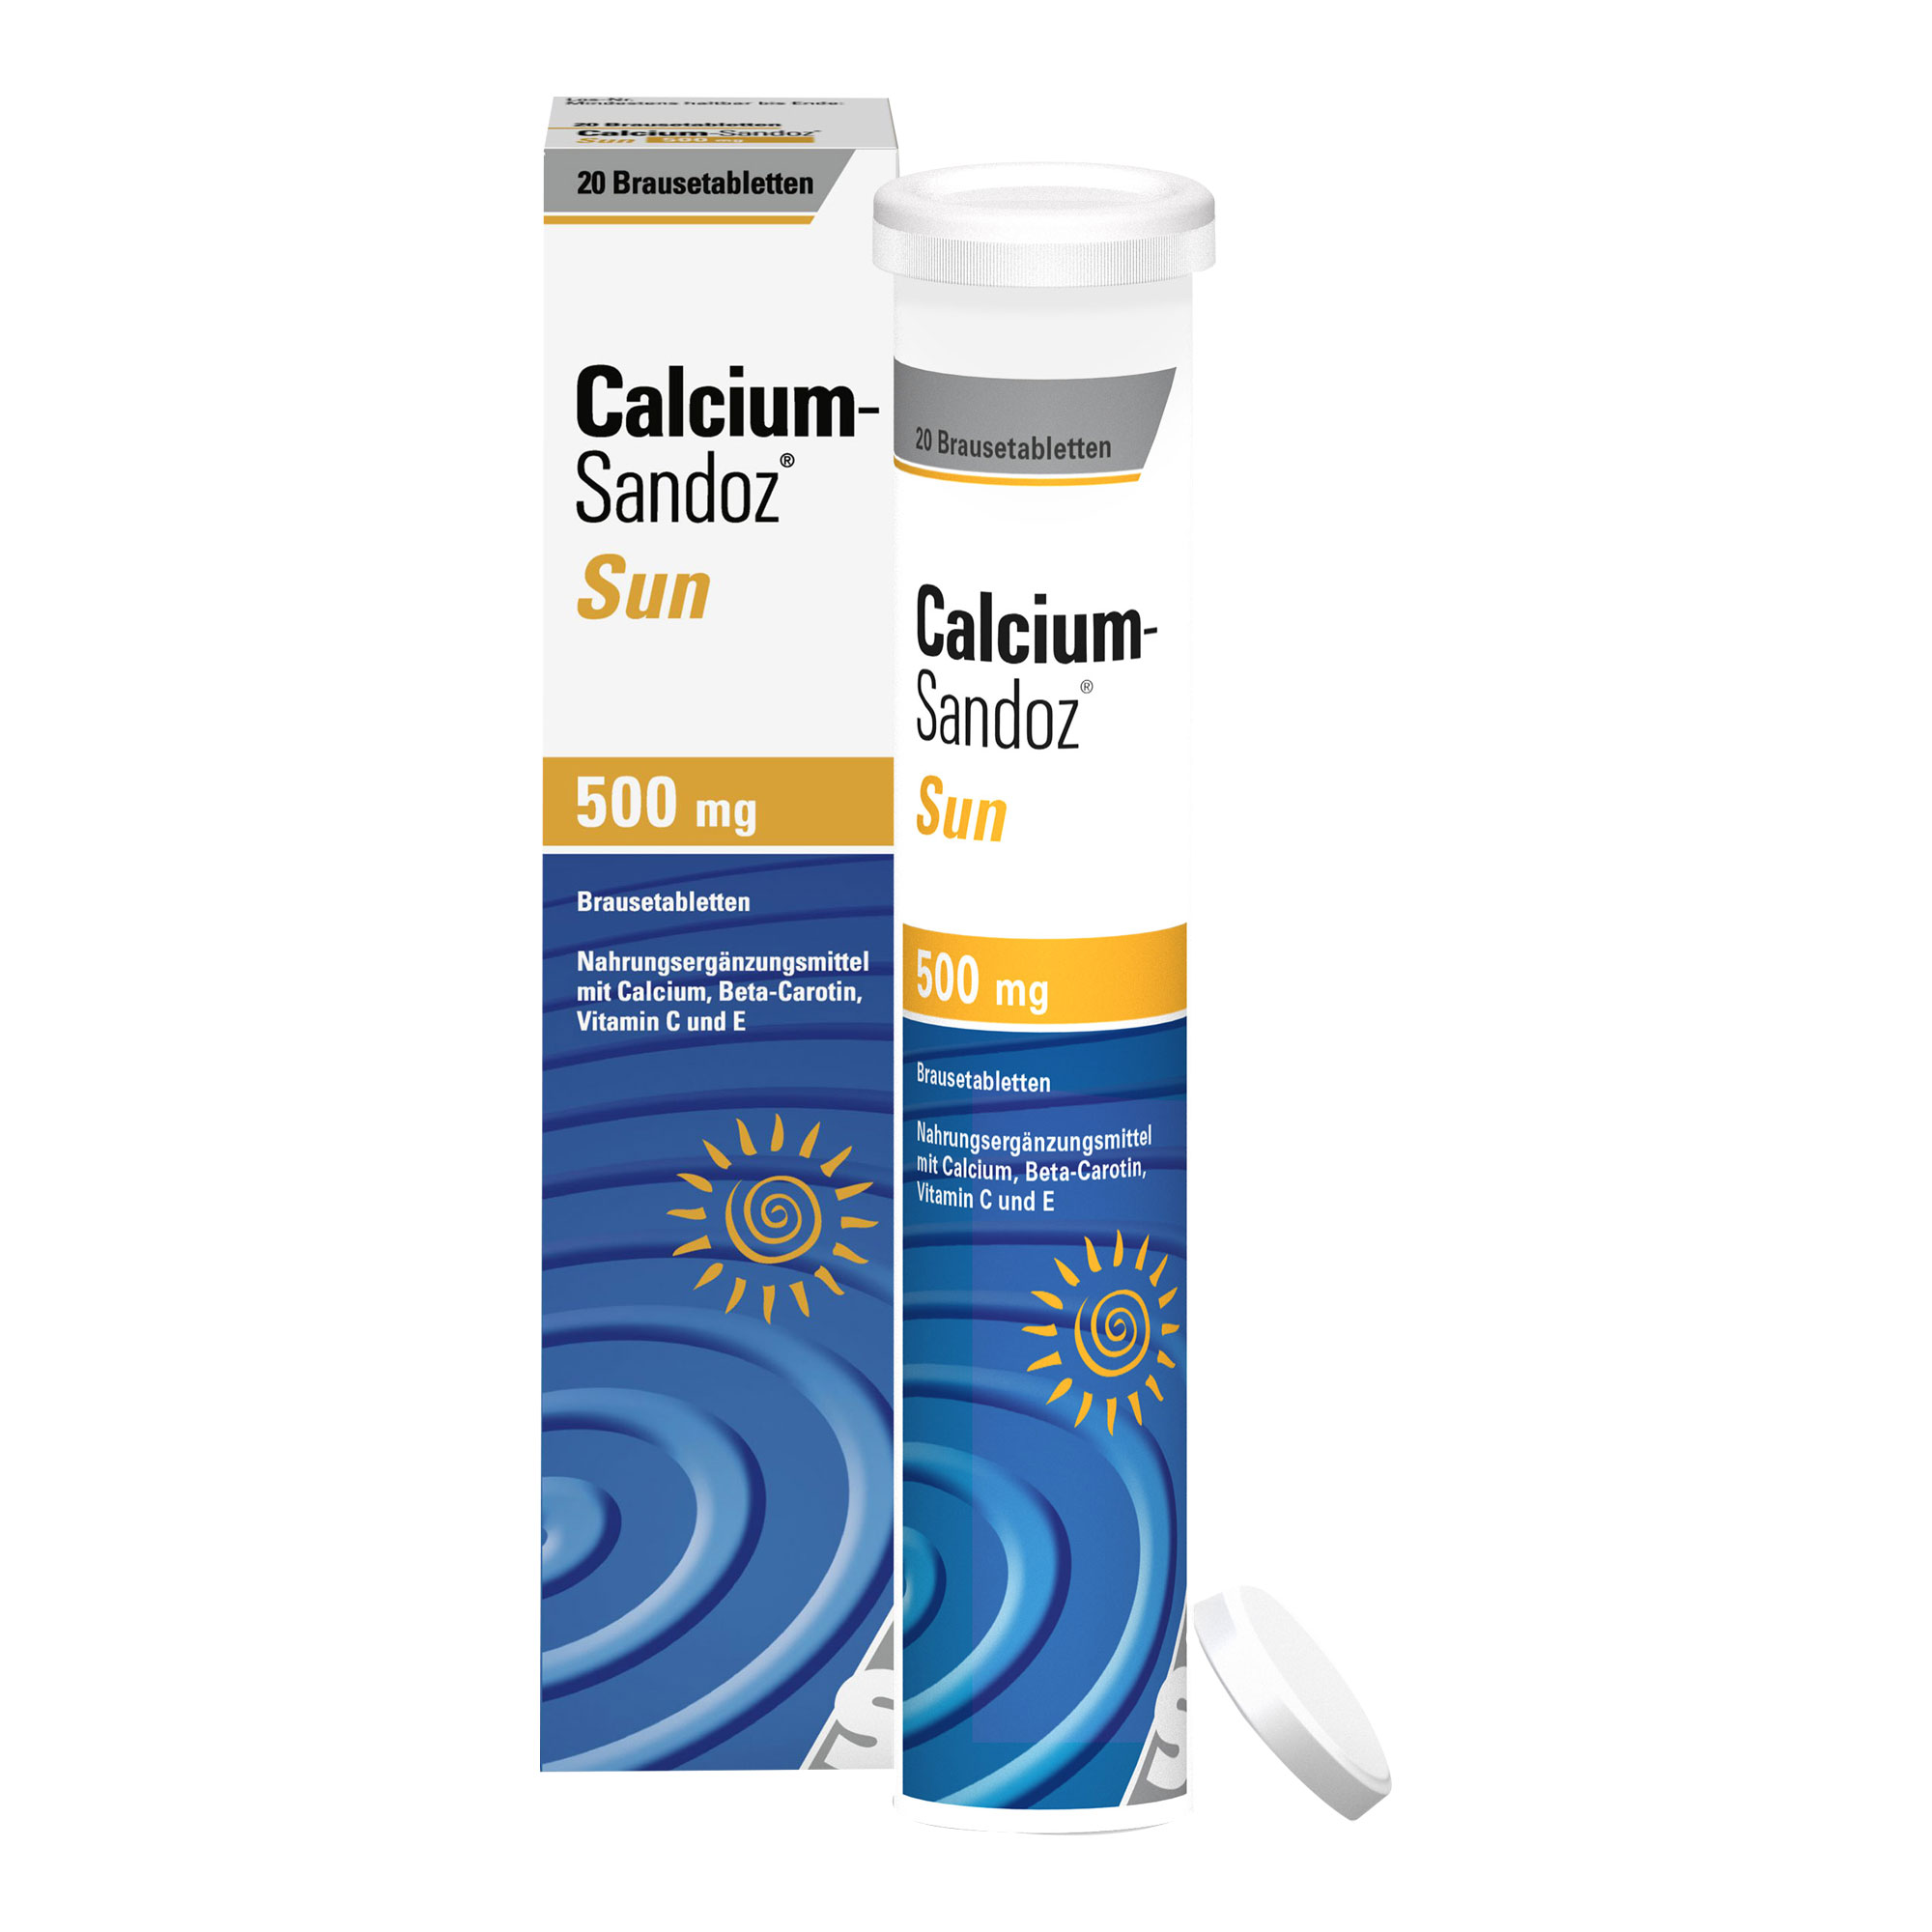 Nahrungsergänzungsmittel mit Calcium, Beta-Carotin, Vitamin C und E. Mit Orangen-Citrusgeschmack.